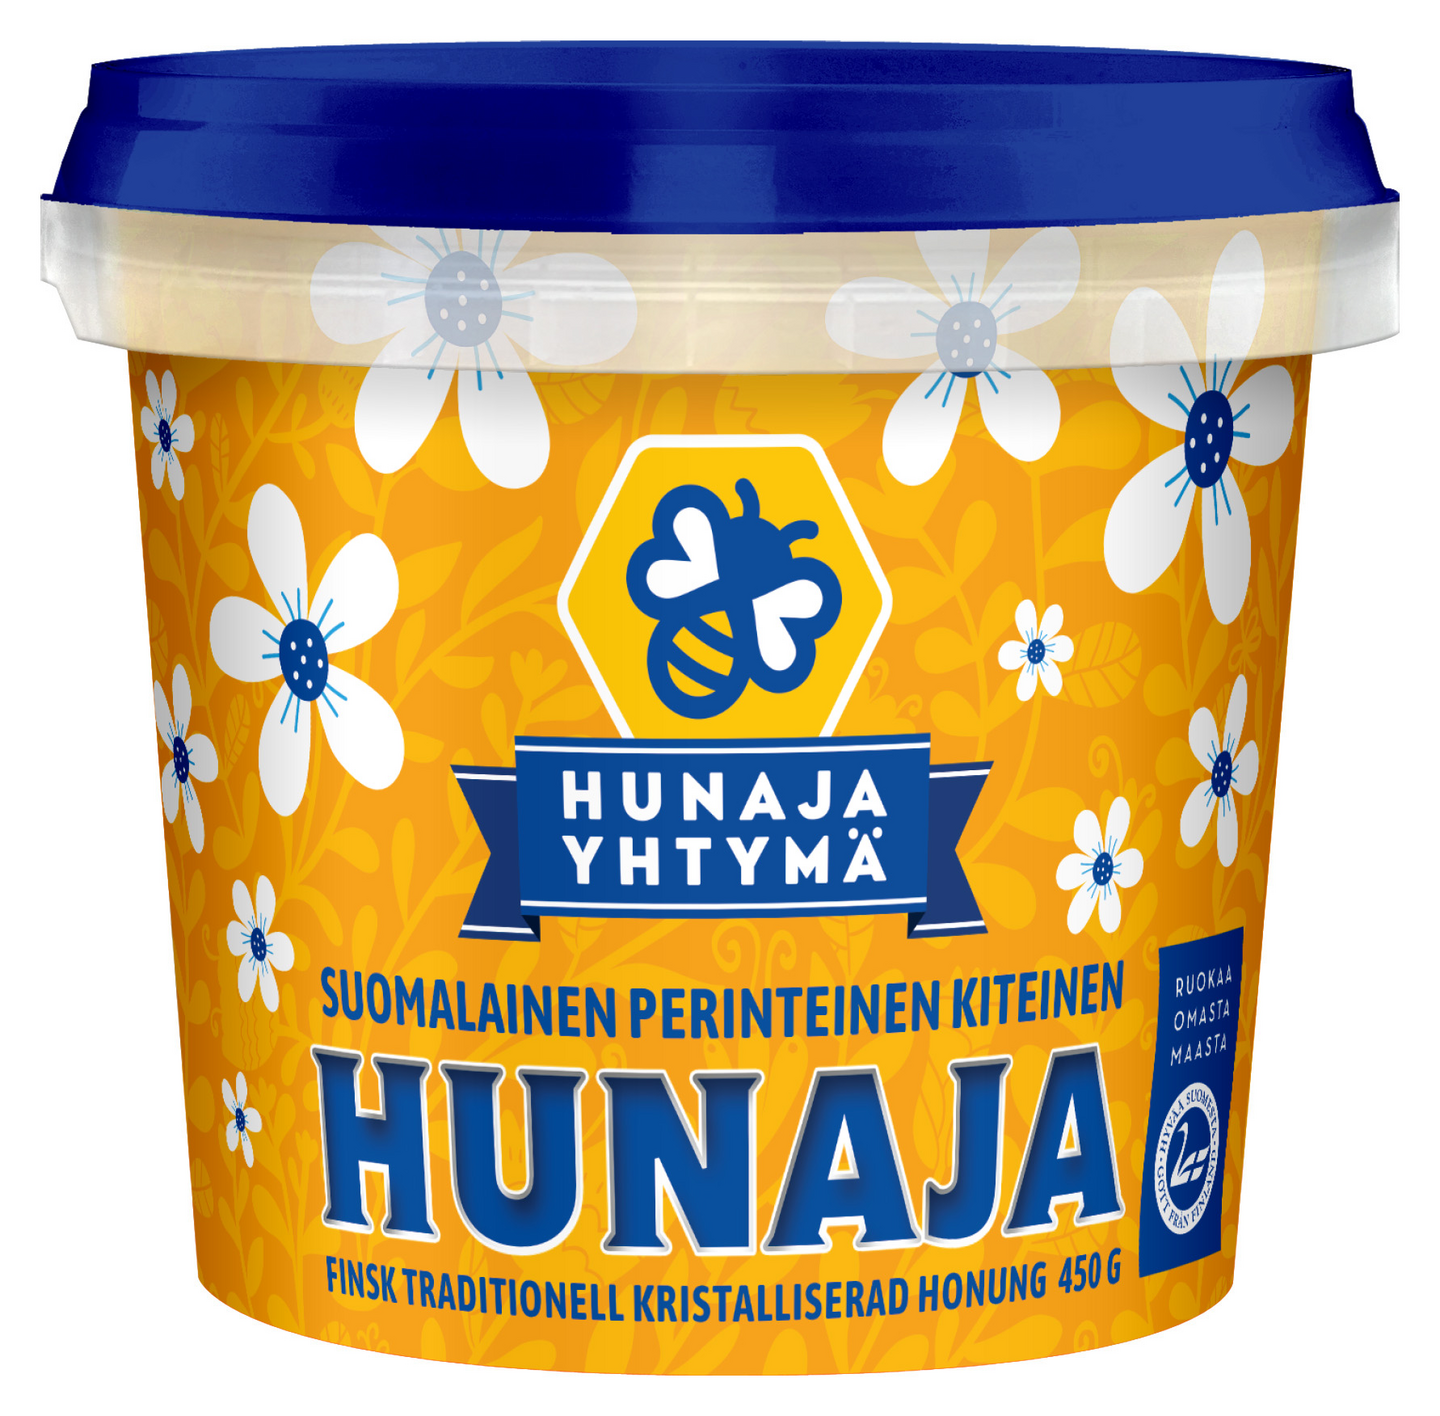 Hunajayhtymä suomalainen perinteinen kiteinen hunaja 450g